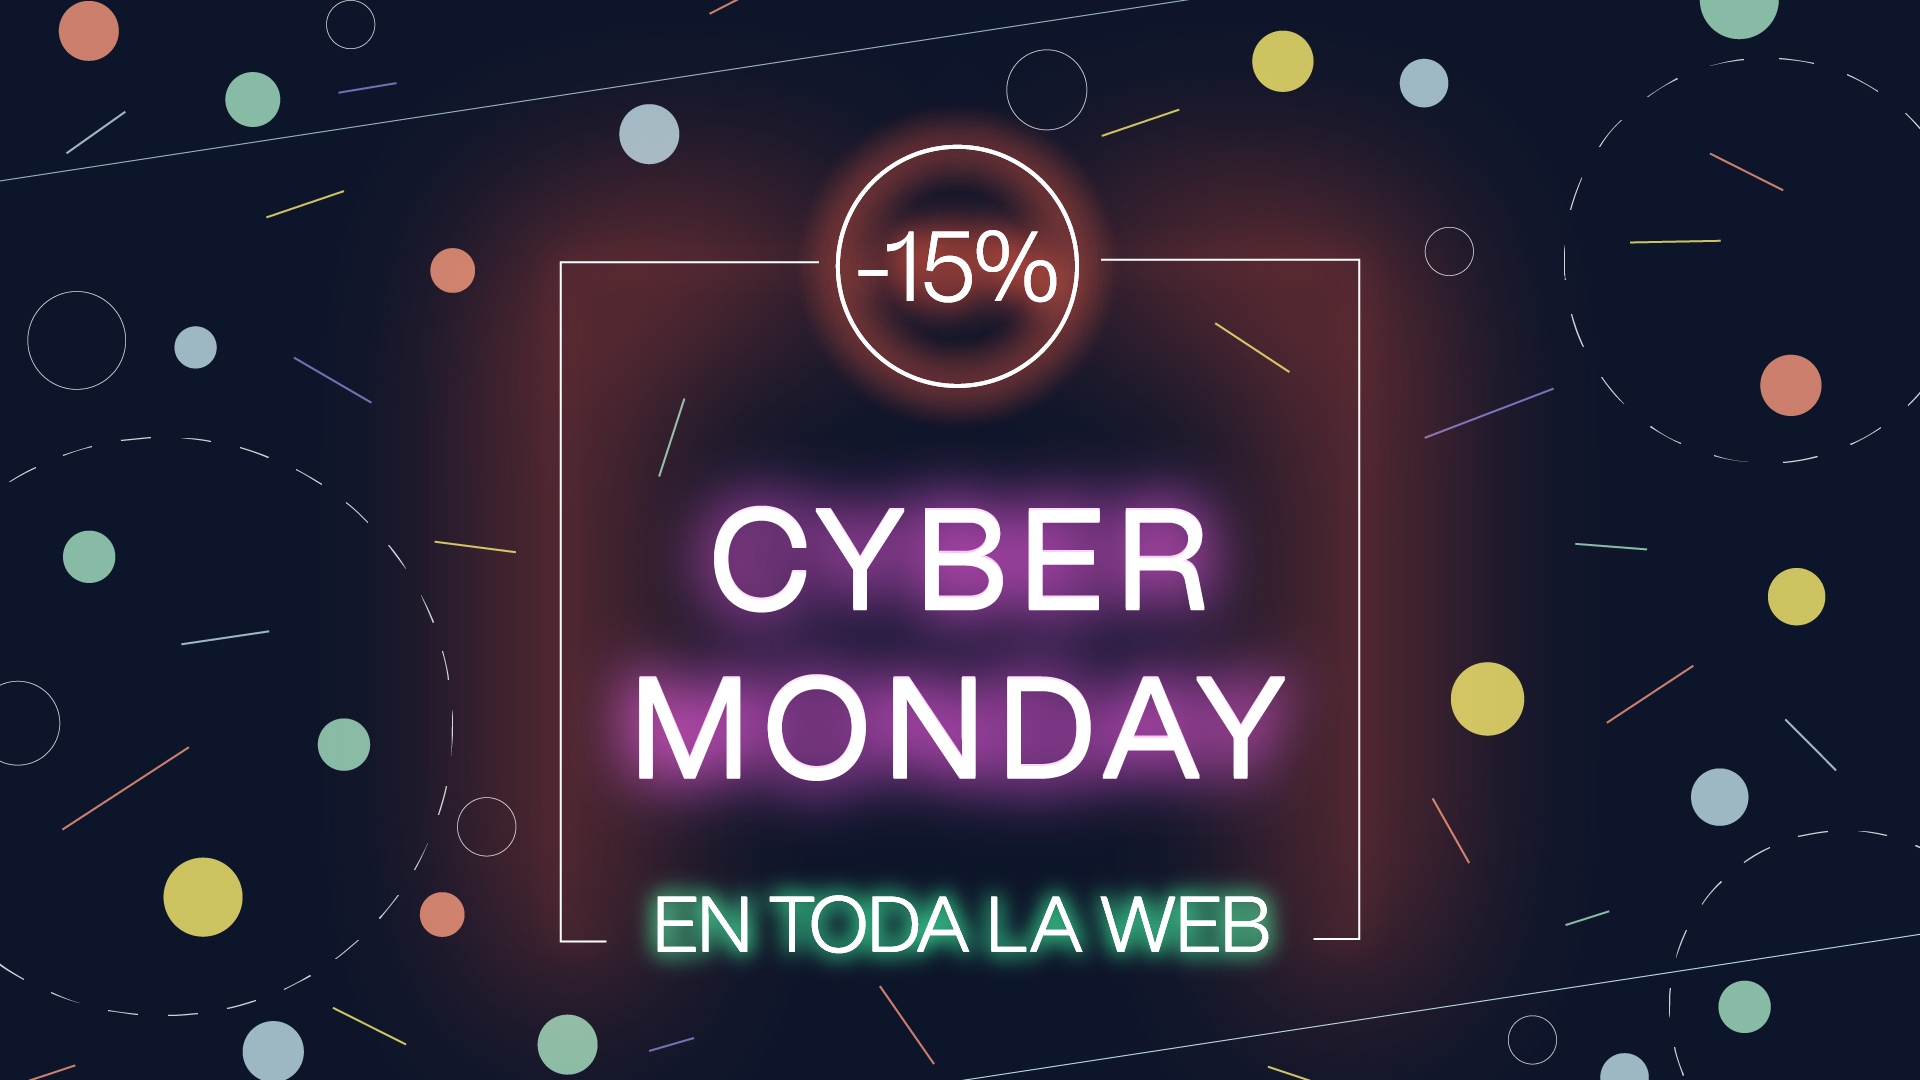 Cyber Monday : -15% en toda la web